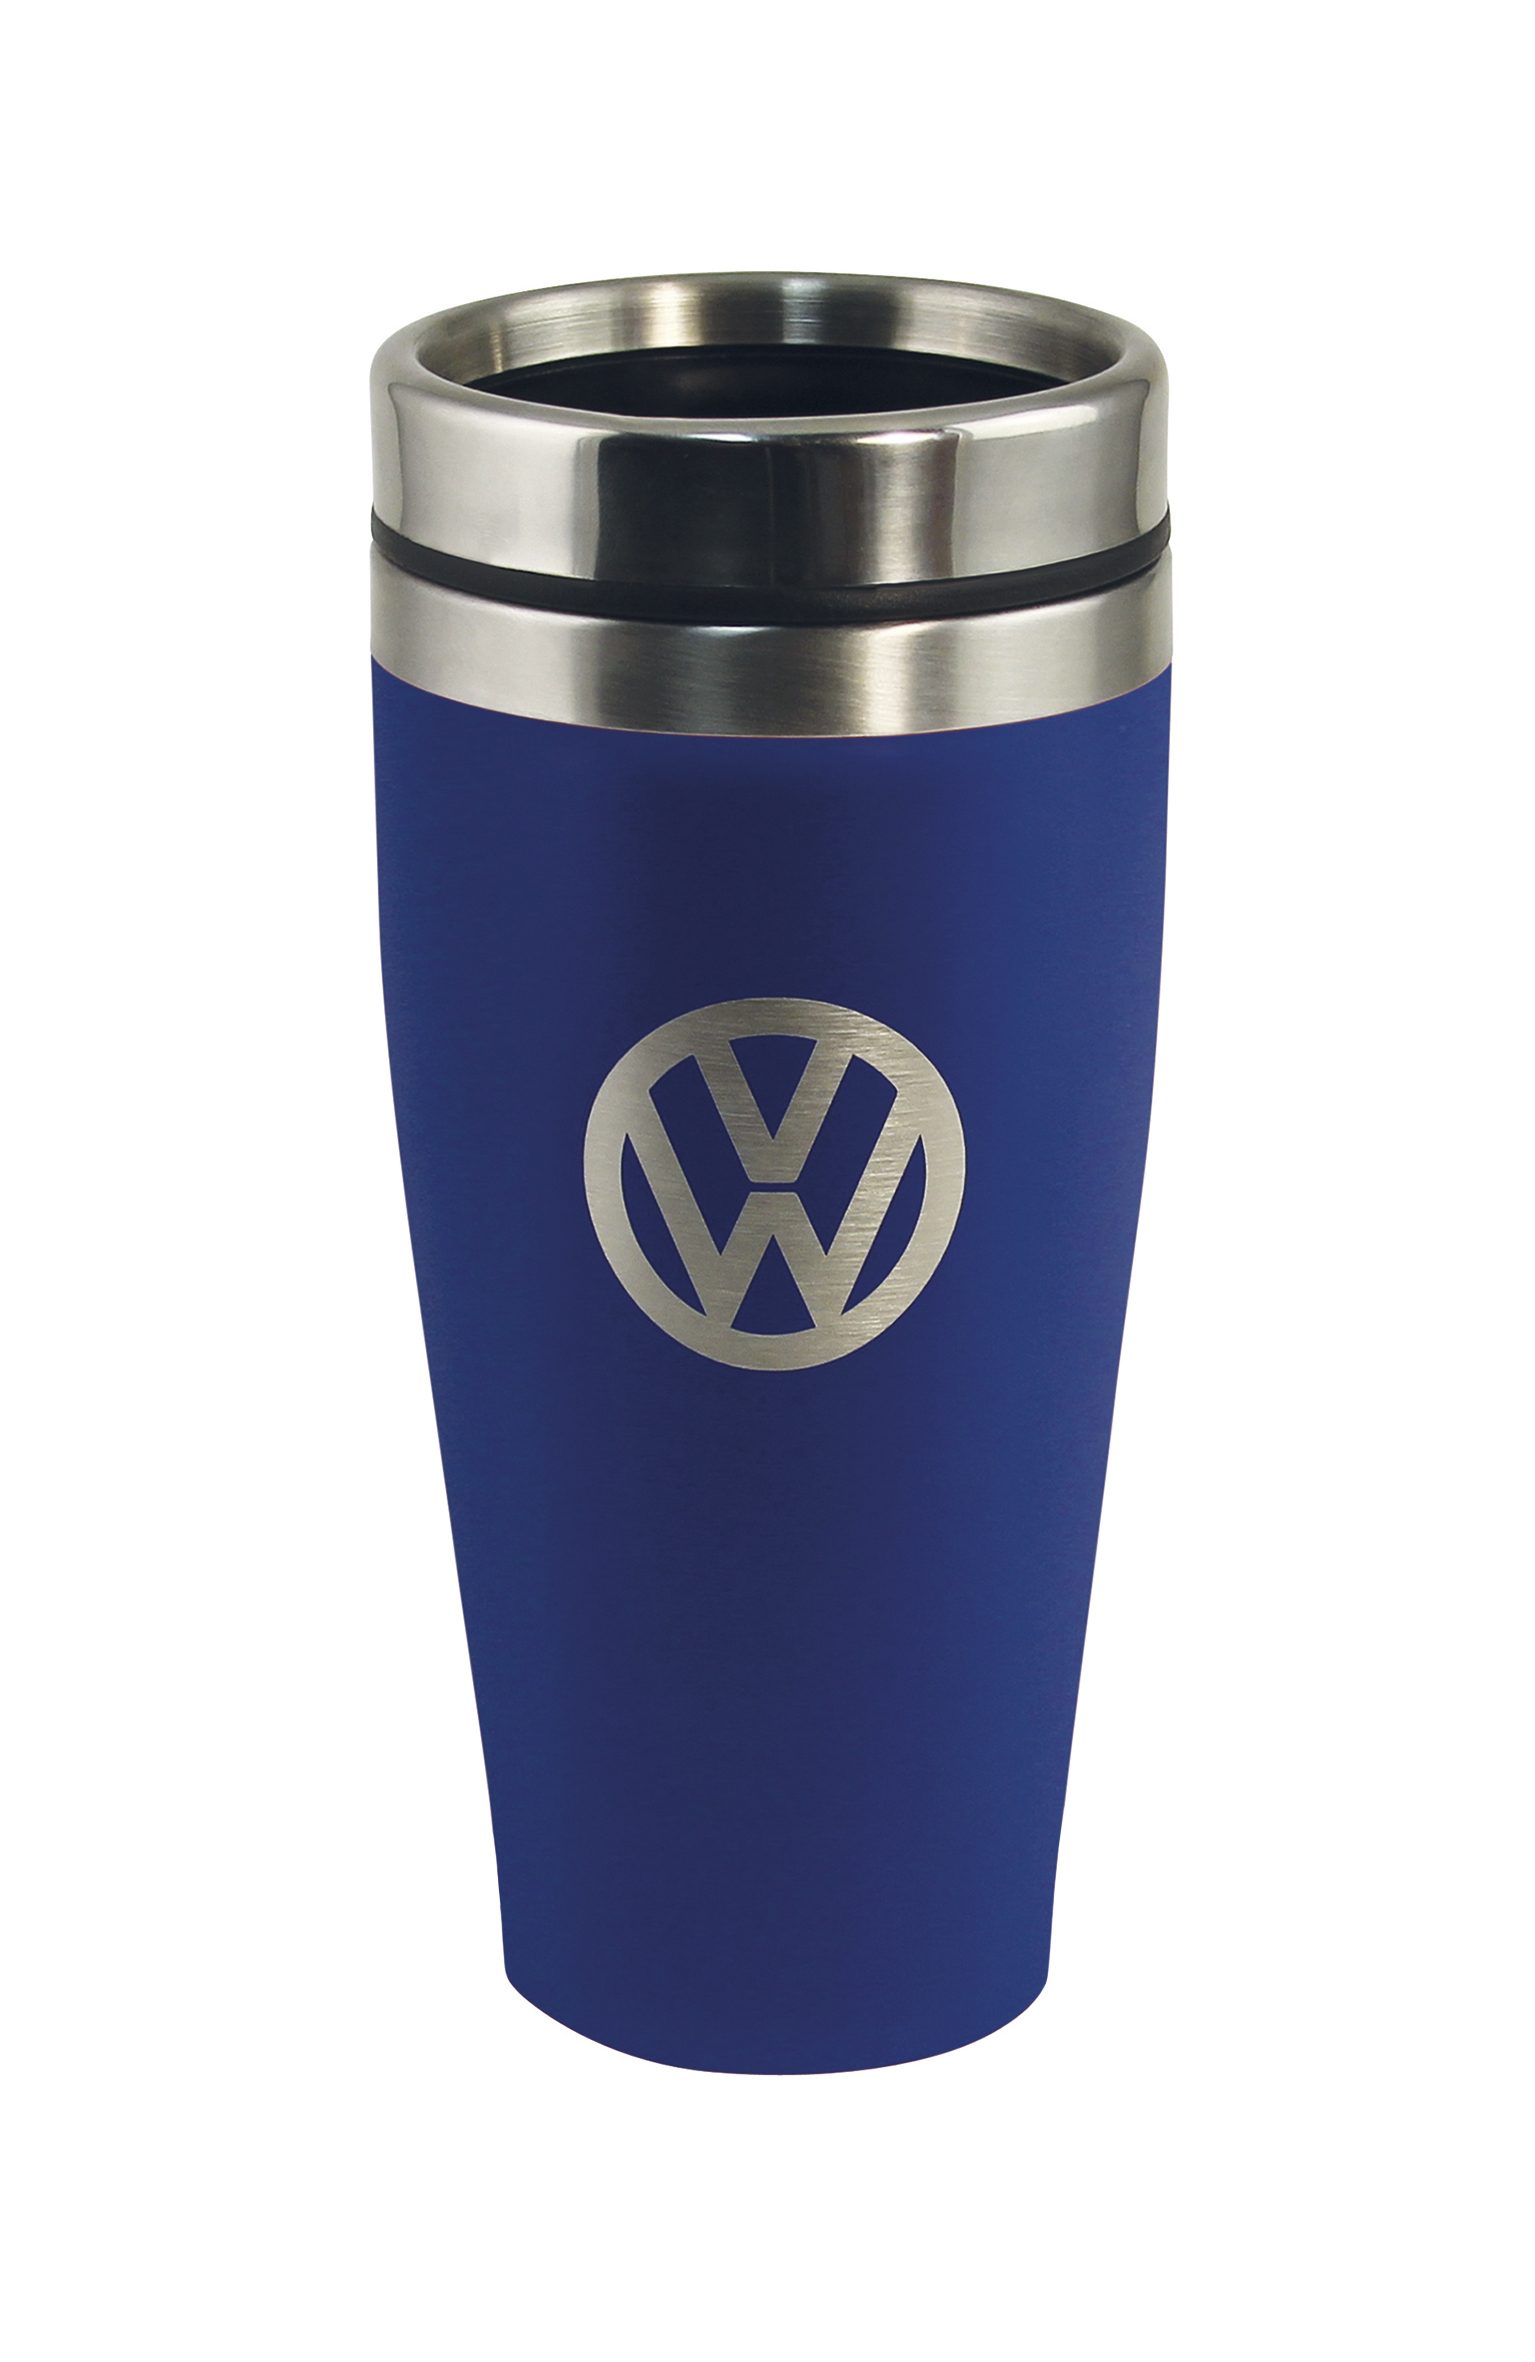 Tazza termica VW in acciaio inox, a doppia parete, 450 ml
